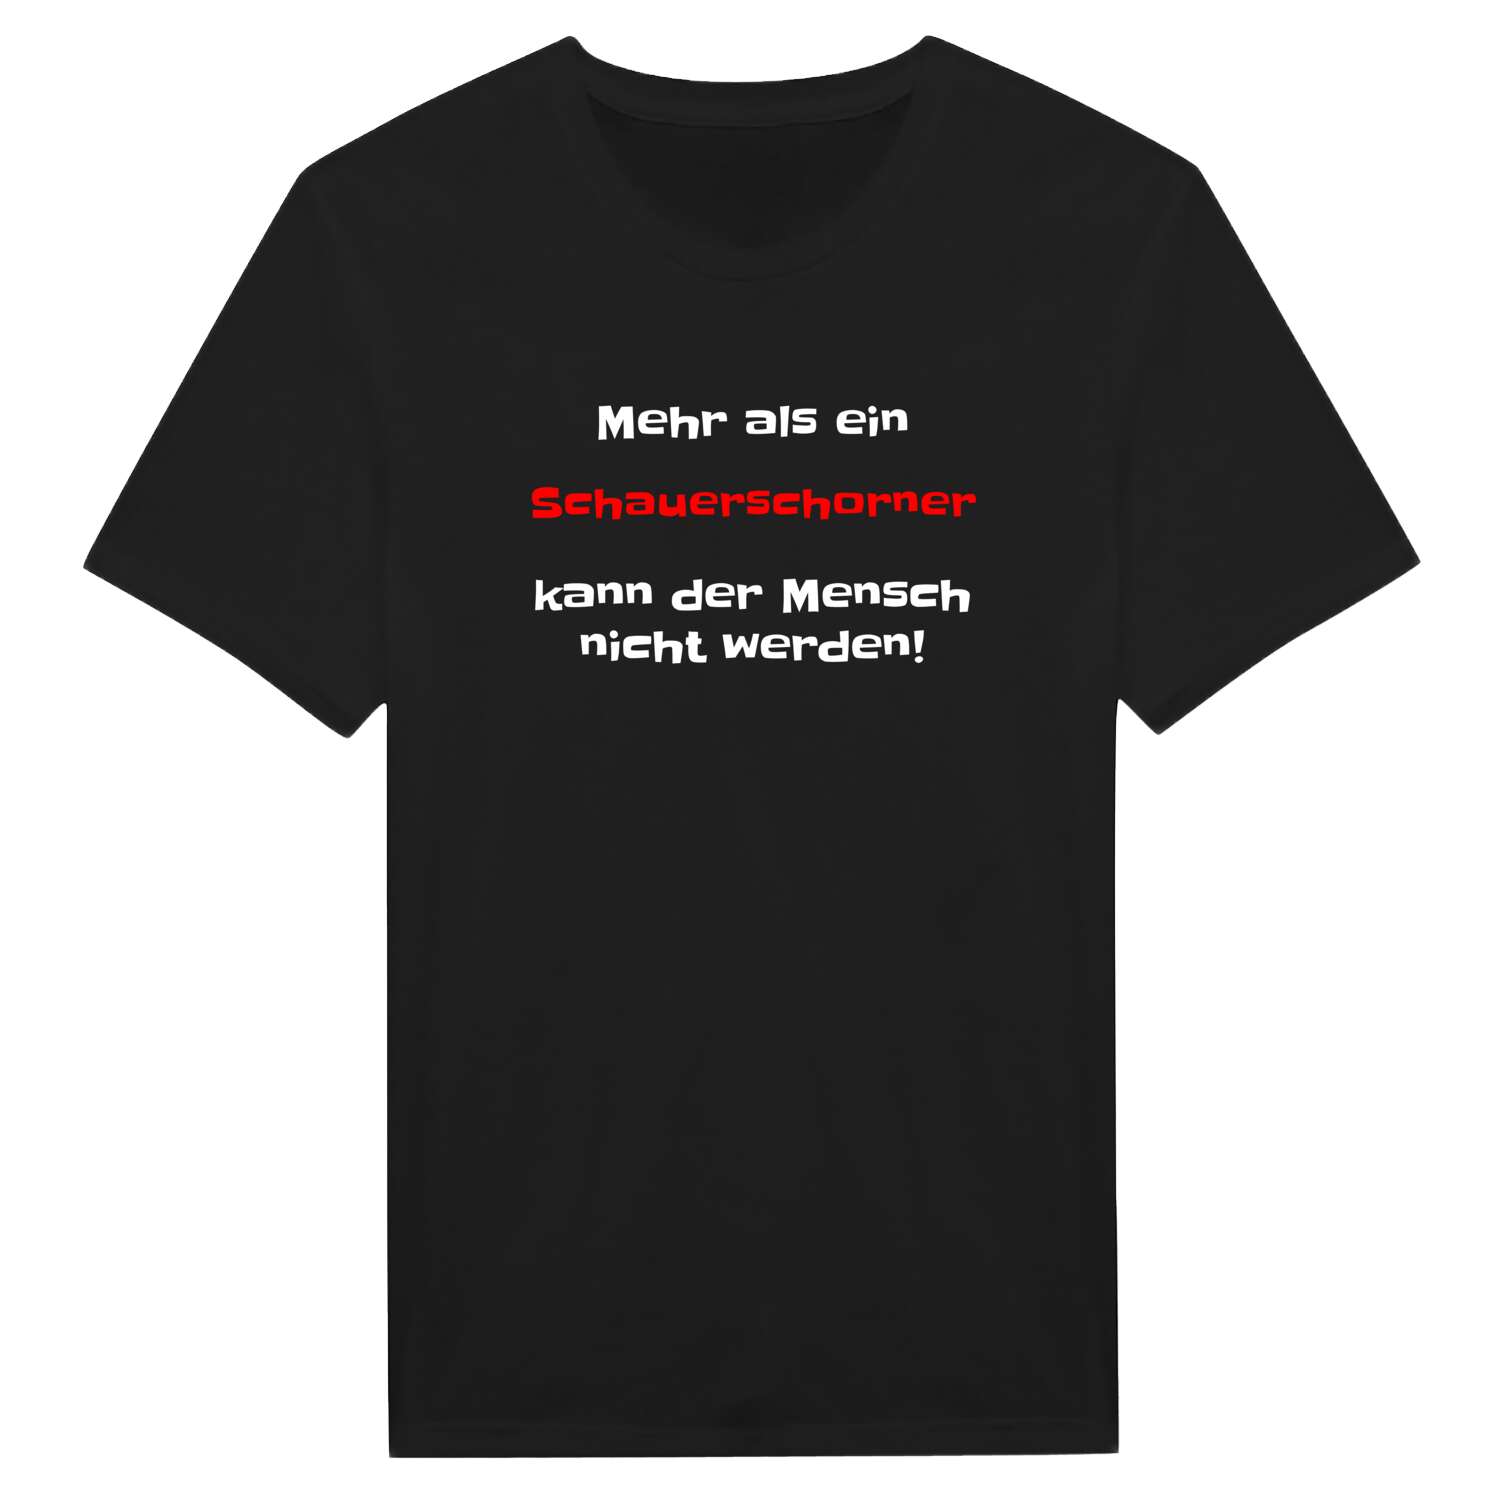 Schauerschorn T-Shirt »Mehr als ein«